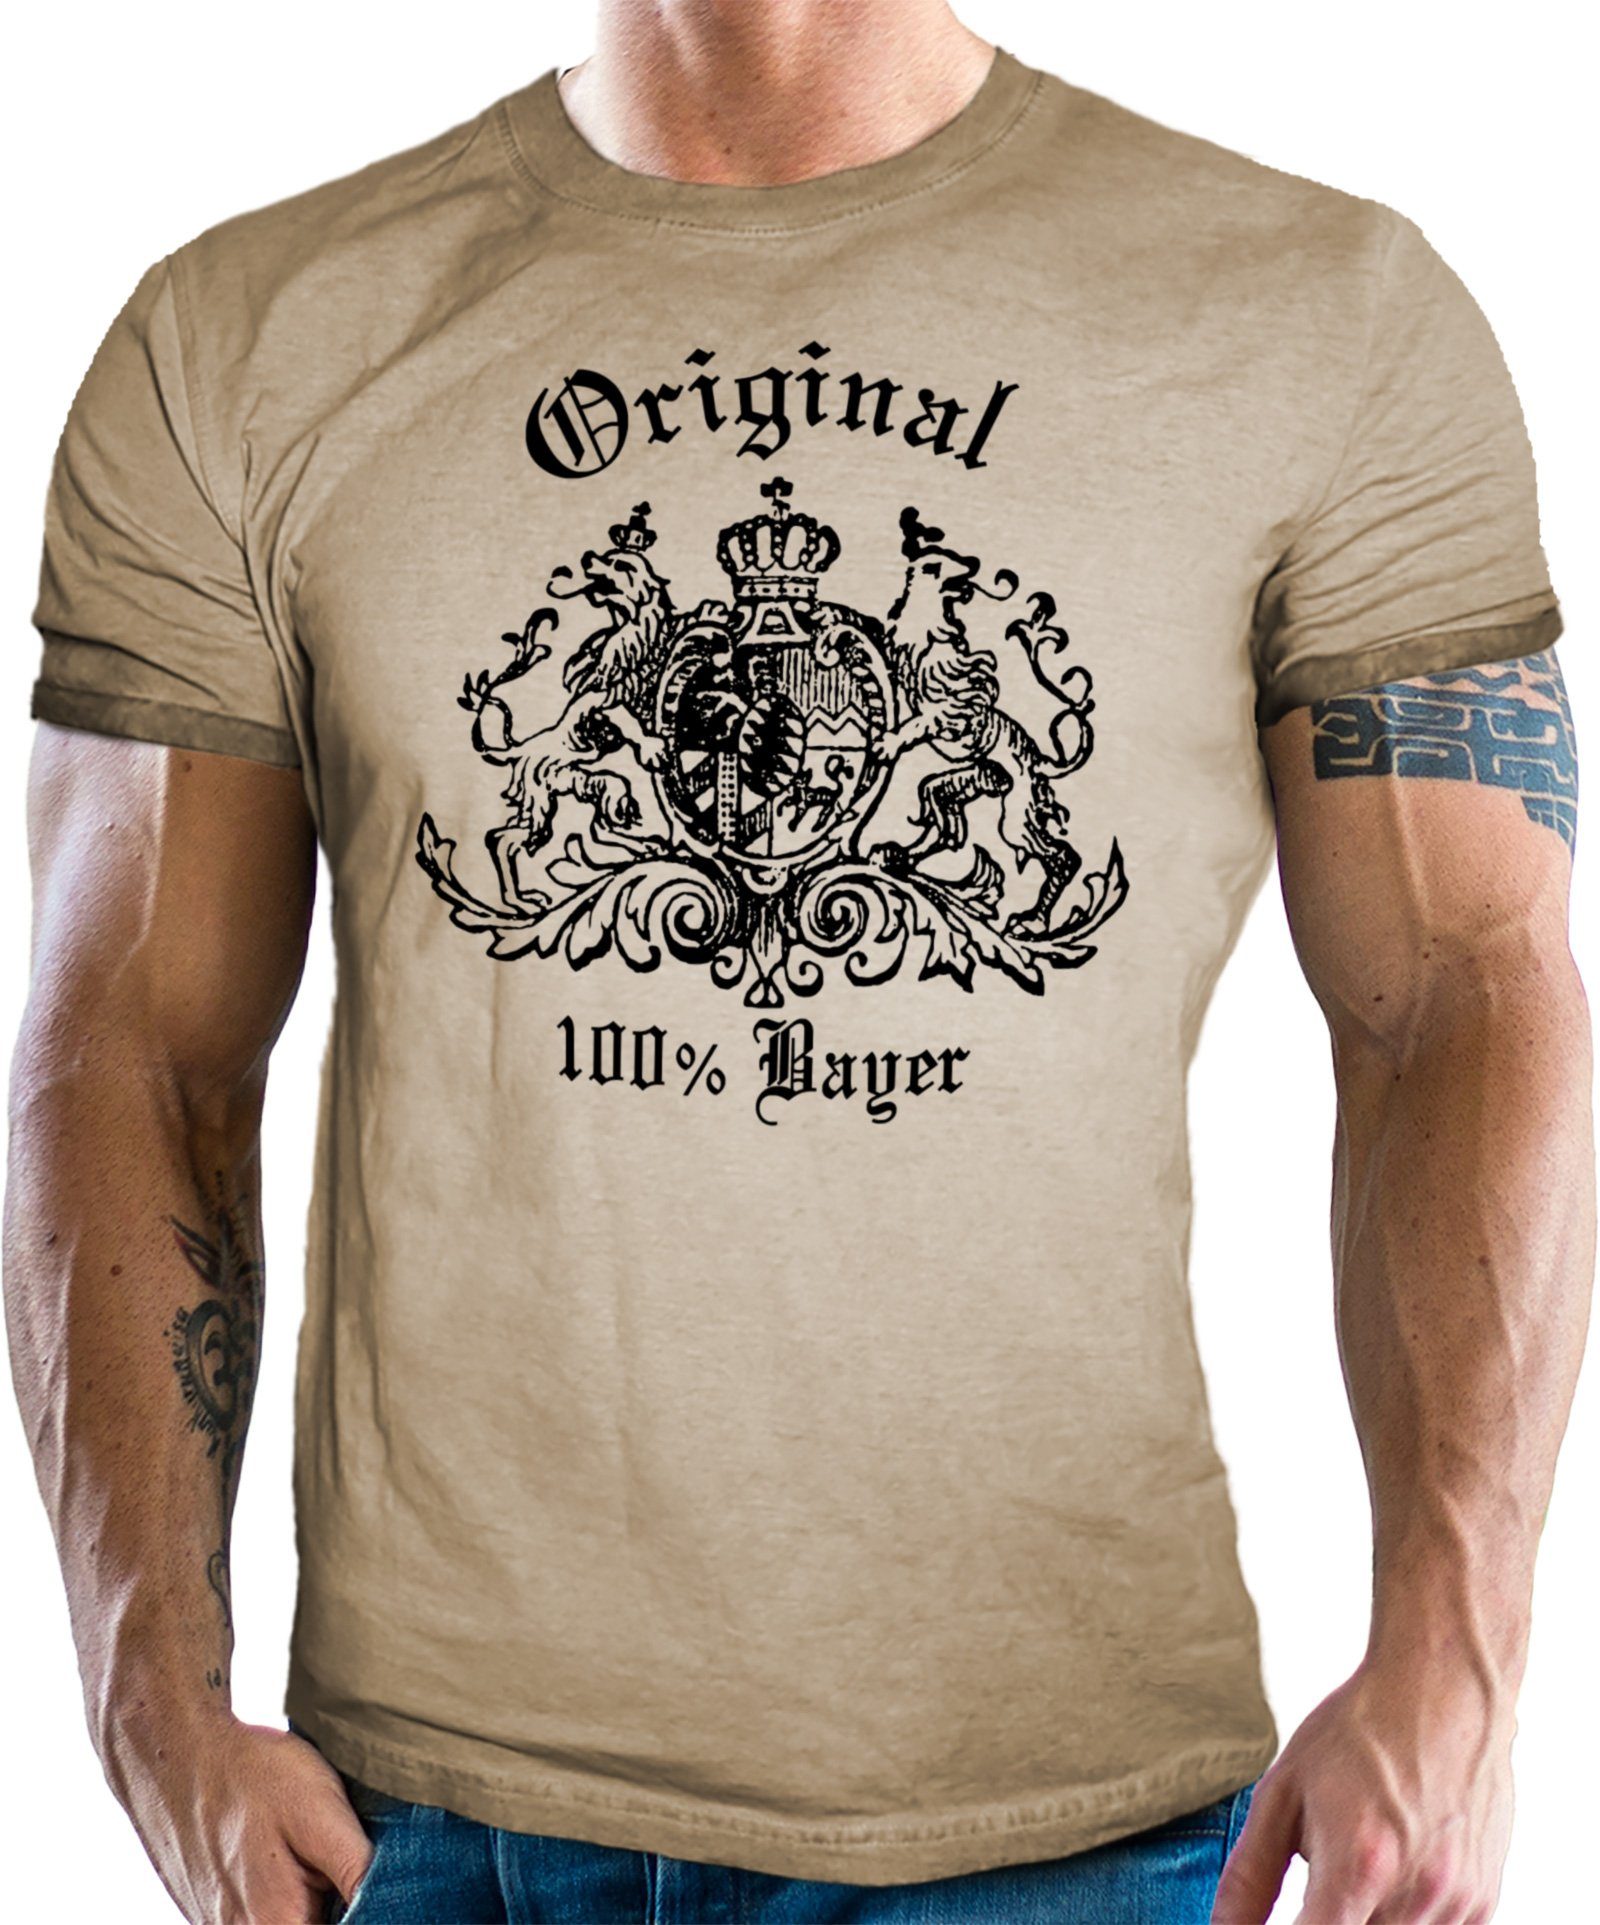 Washed Used T-Shirt Trachten für 100% Bayer Look: NEGRO® Sand Bayern Fans LOBO im